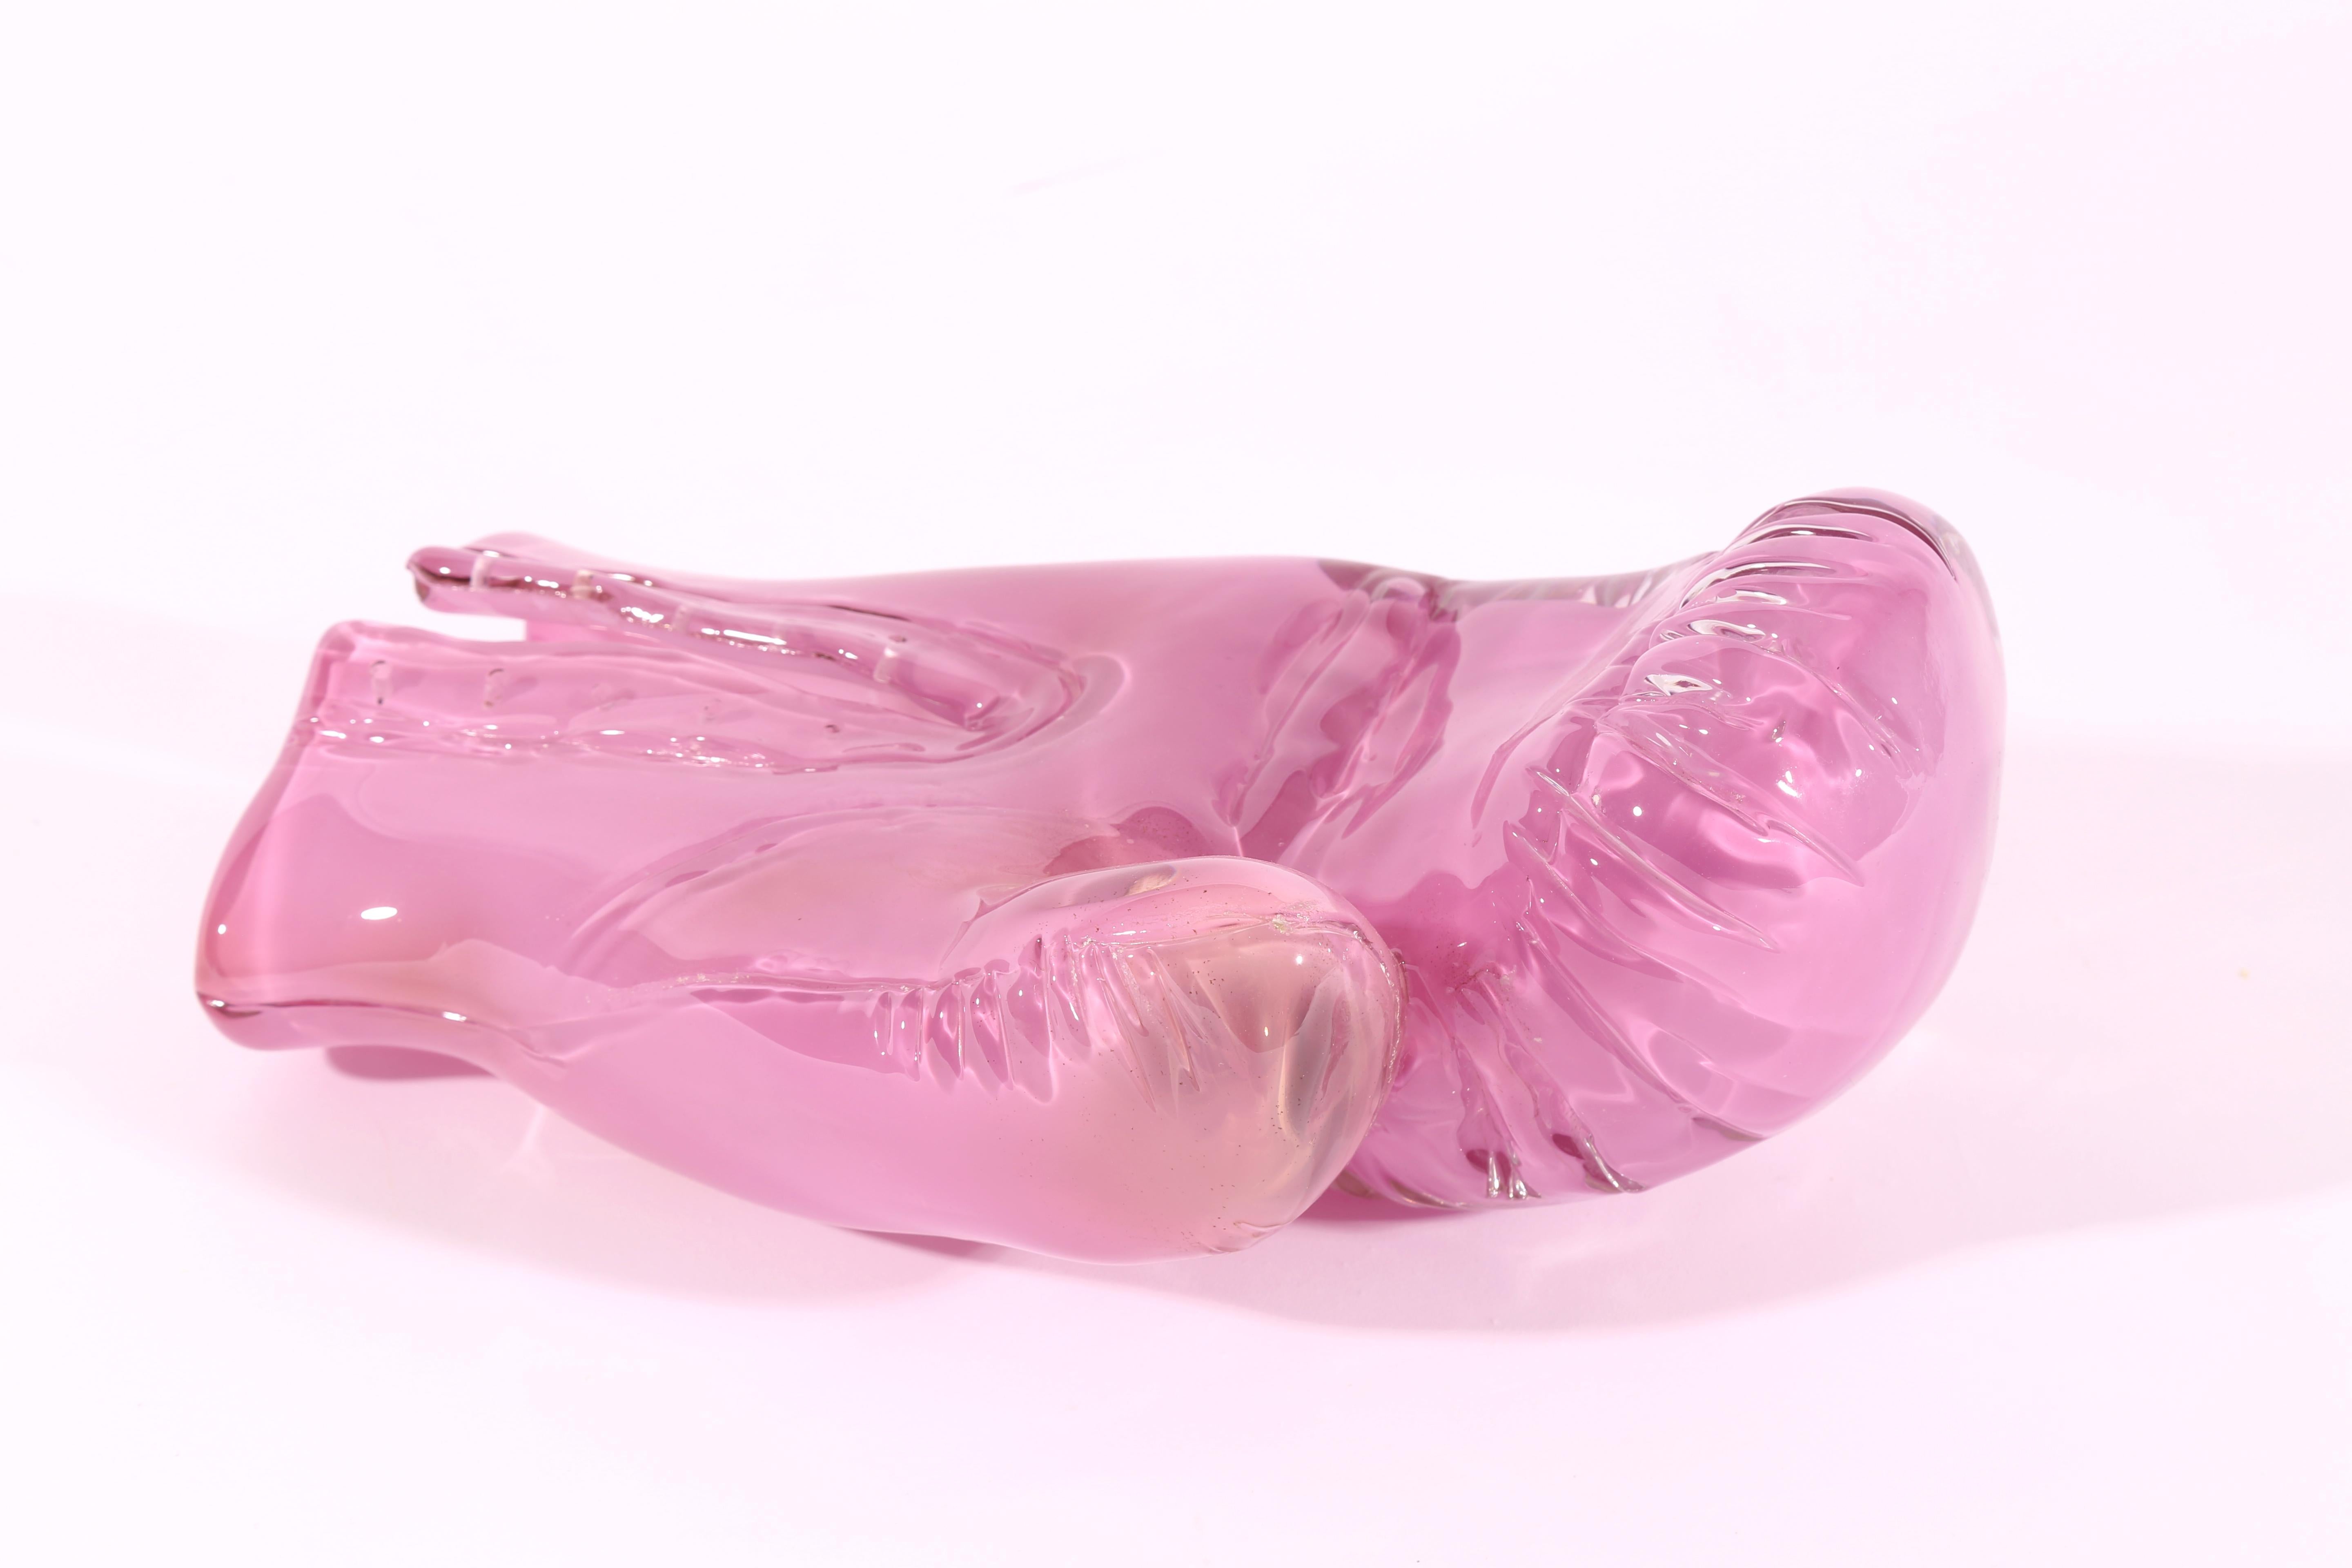 Zoe Buckman Still-Life Sculpture - Bubblegum Boxing Glove 